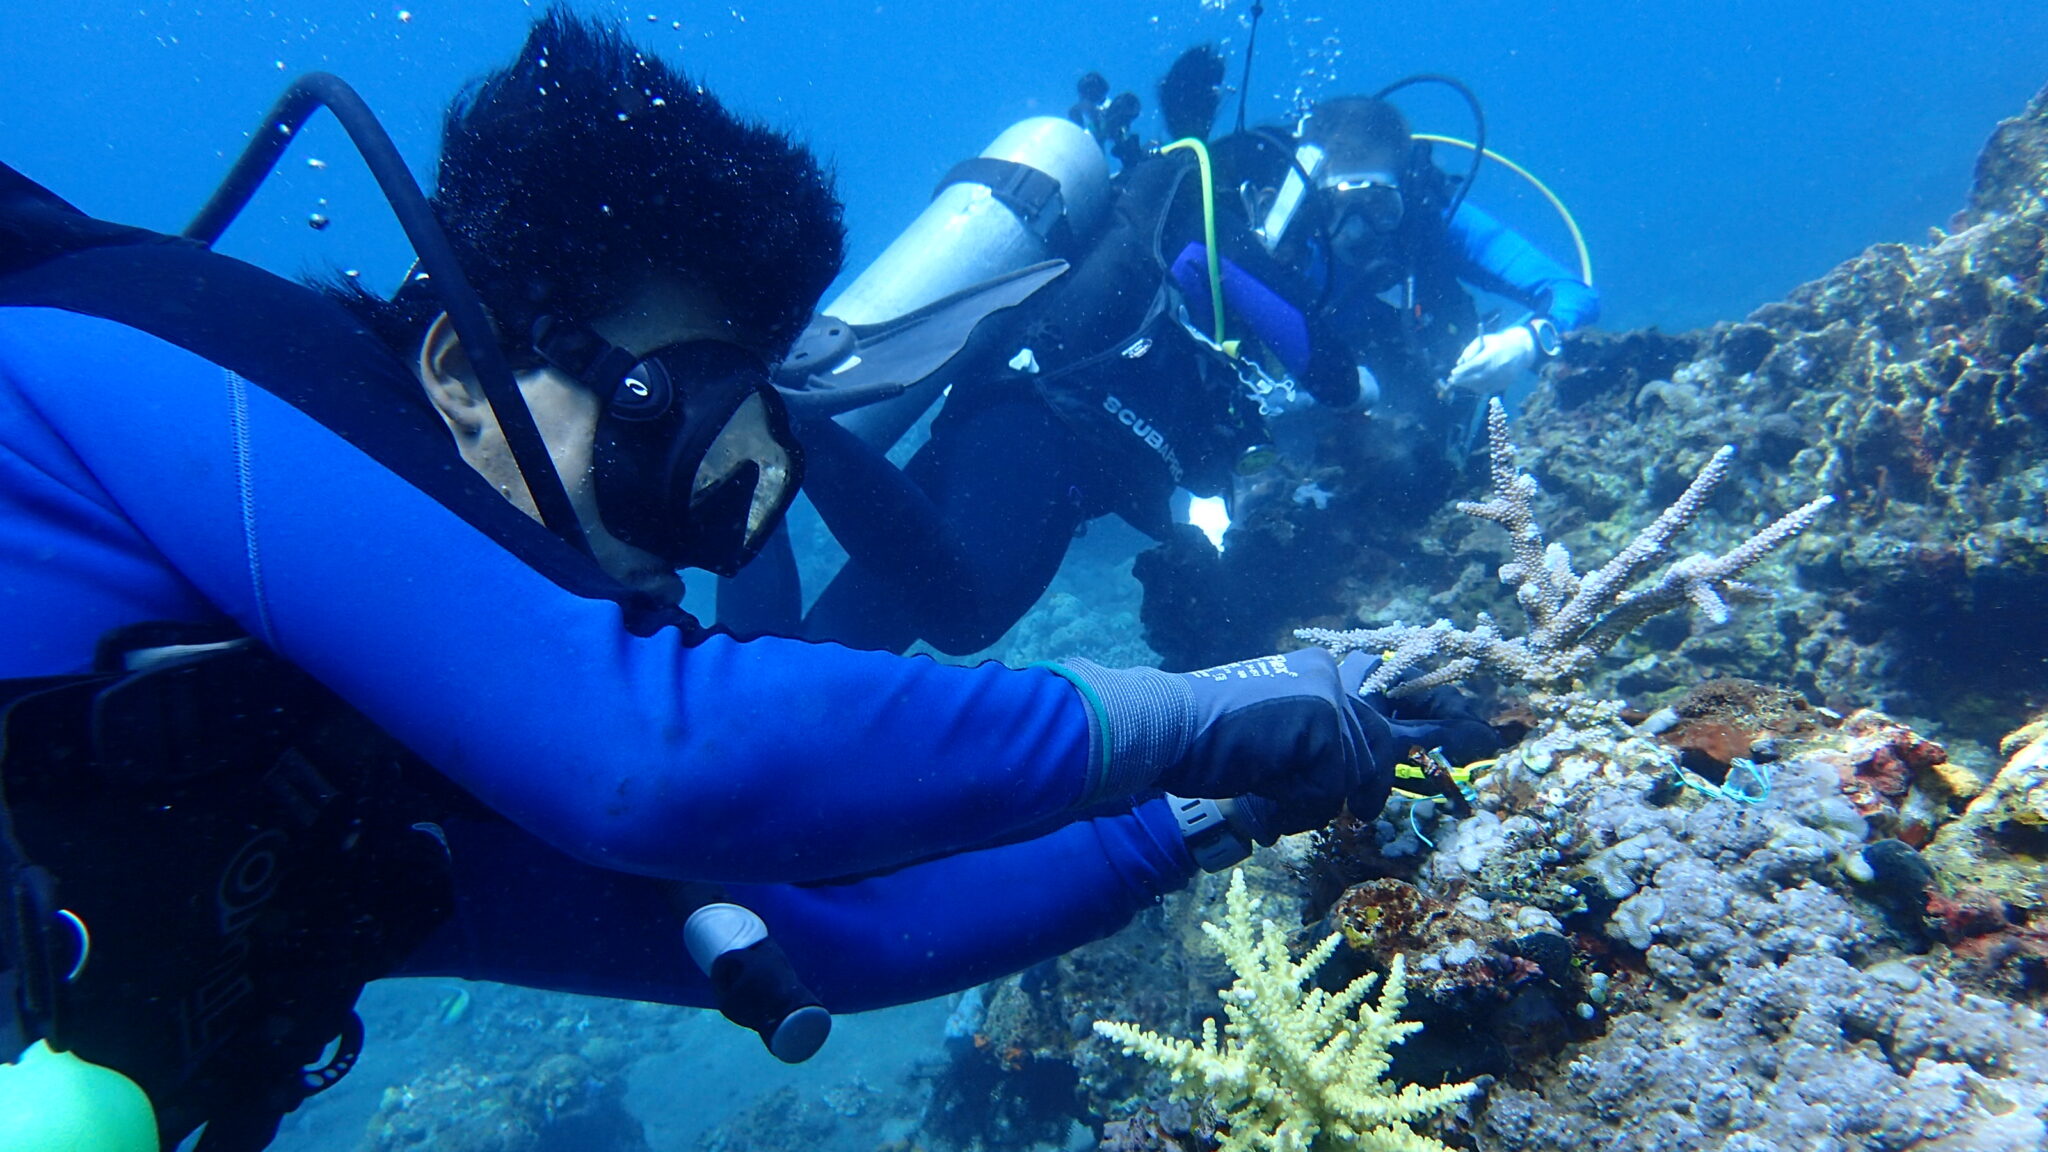 ชุมชนทางทะเลที่ทำงานปลูกถ่ายปะการัง